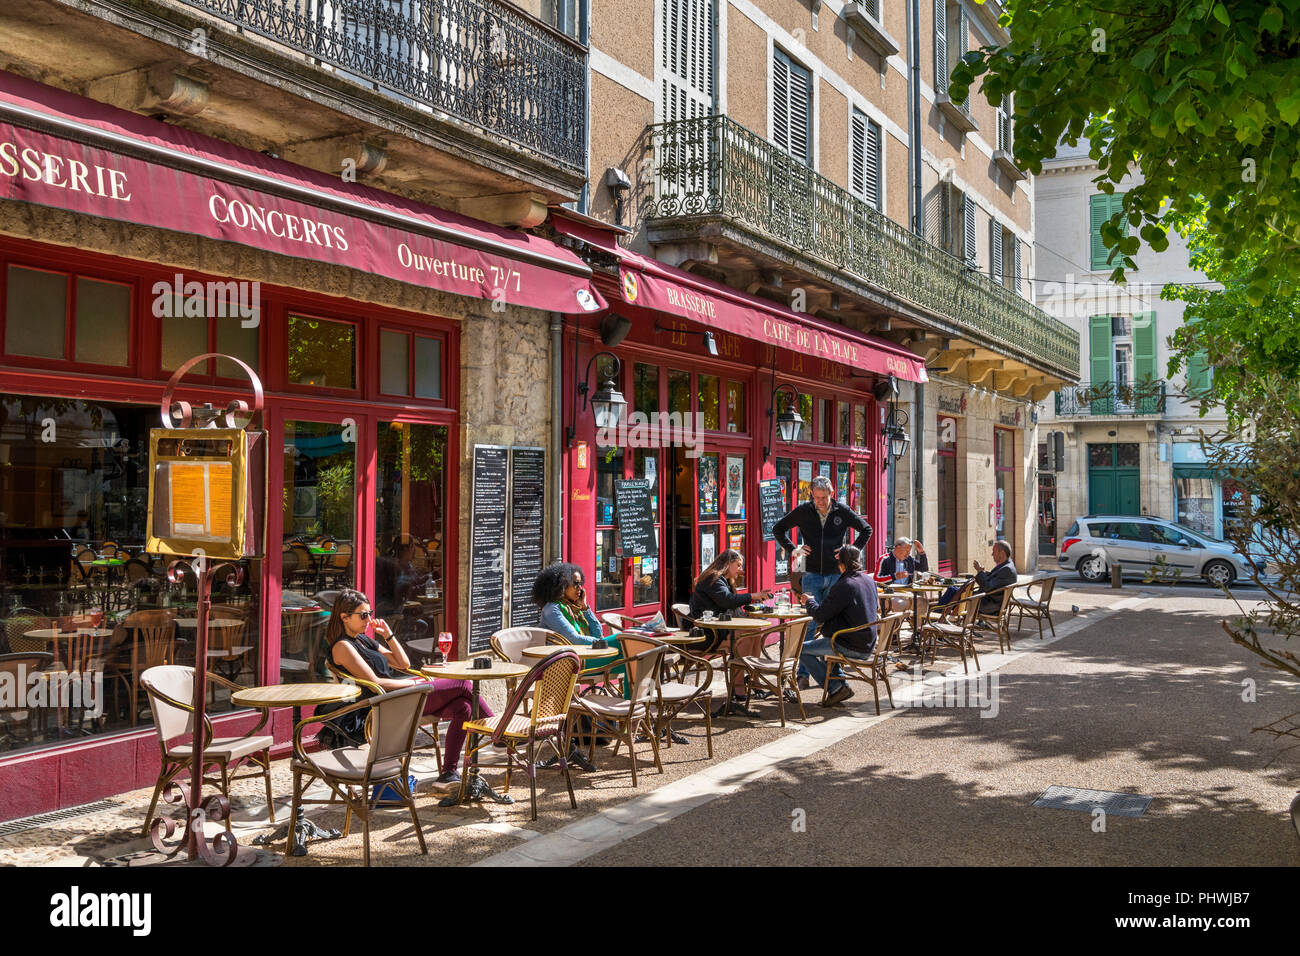 Cafe in the old town centre, Place du Marché au Bois, Perigueux, Dordogne,  France Stock Photo - Alamy